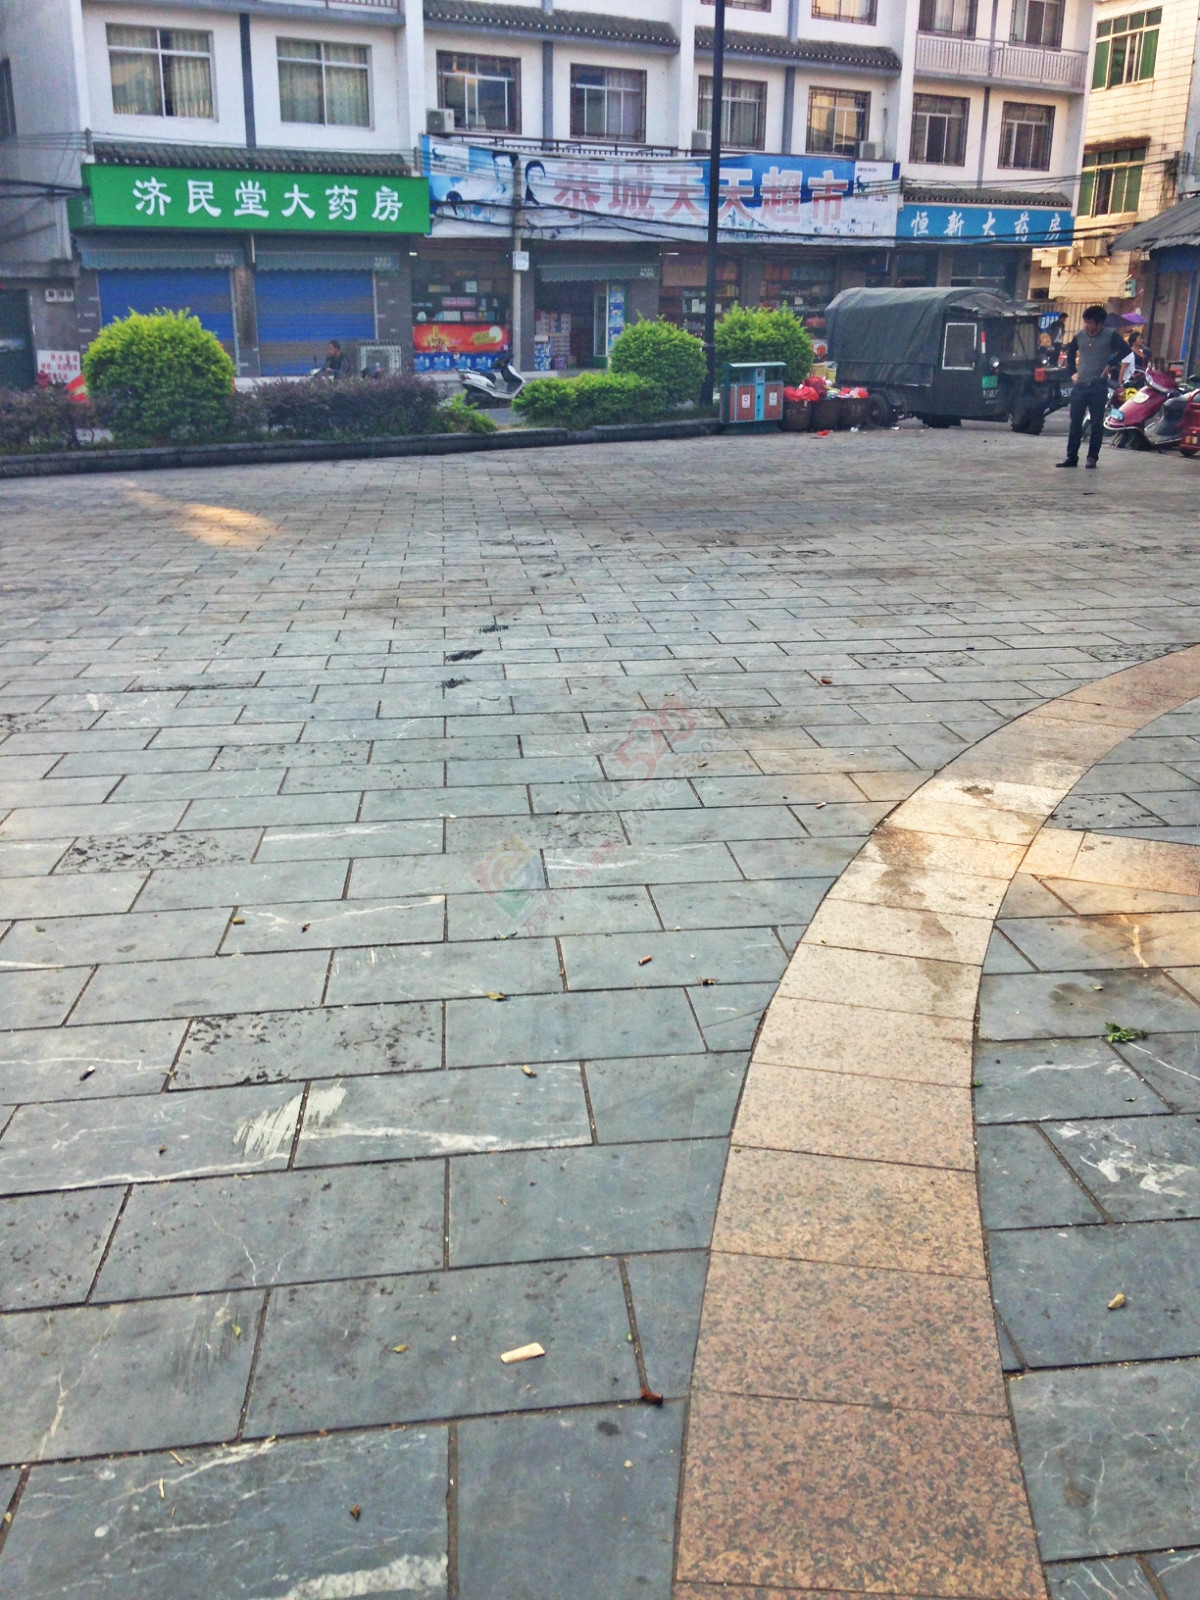 昔日的小广场如今已成了“垃圾堆”730 / 作者:恭城520小奈姐姐 / 帖子ID:128568